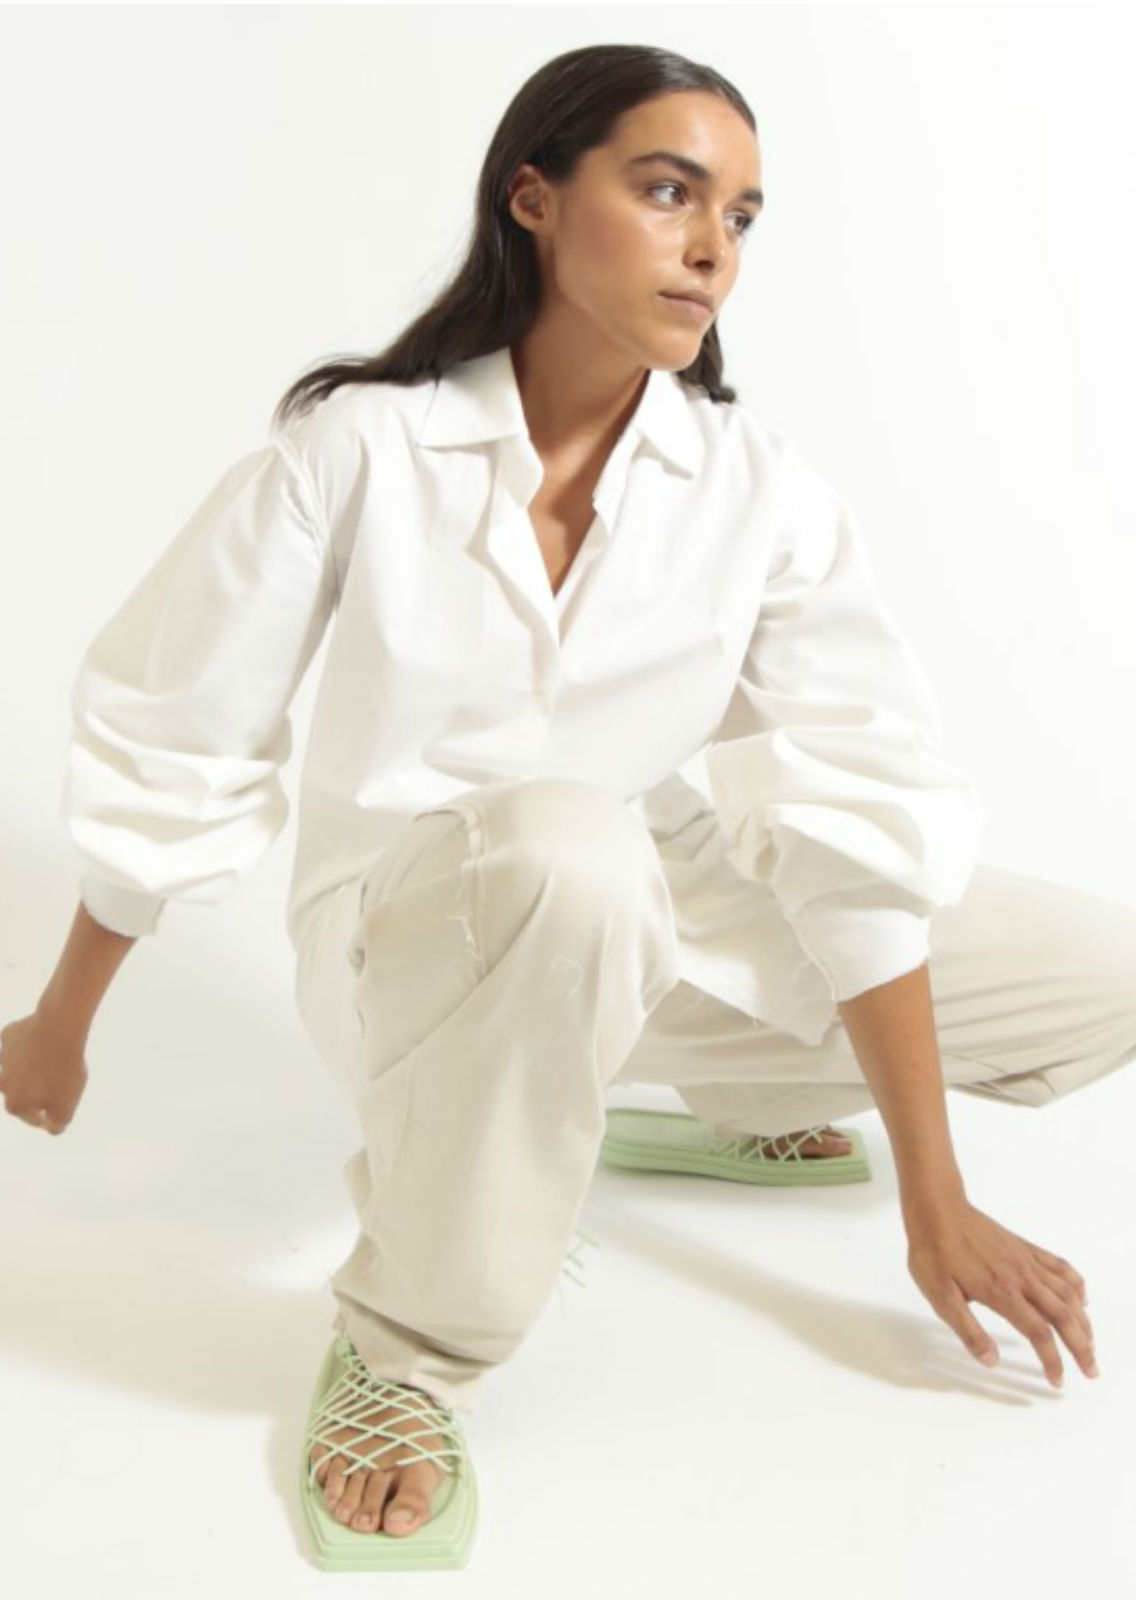 JULIA GONZALEZ. Carmen Duran Model Agency.